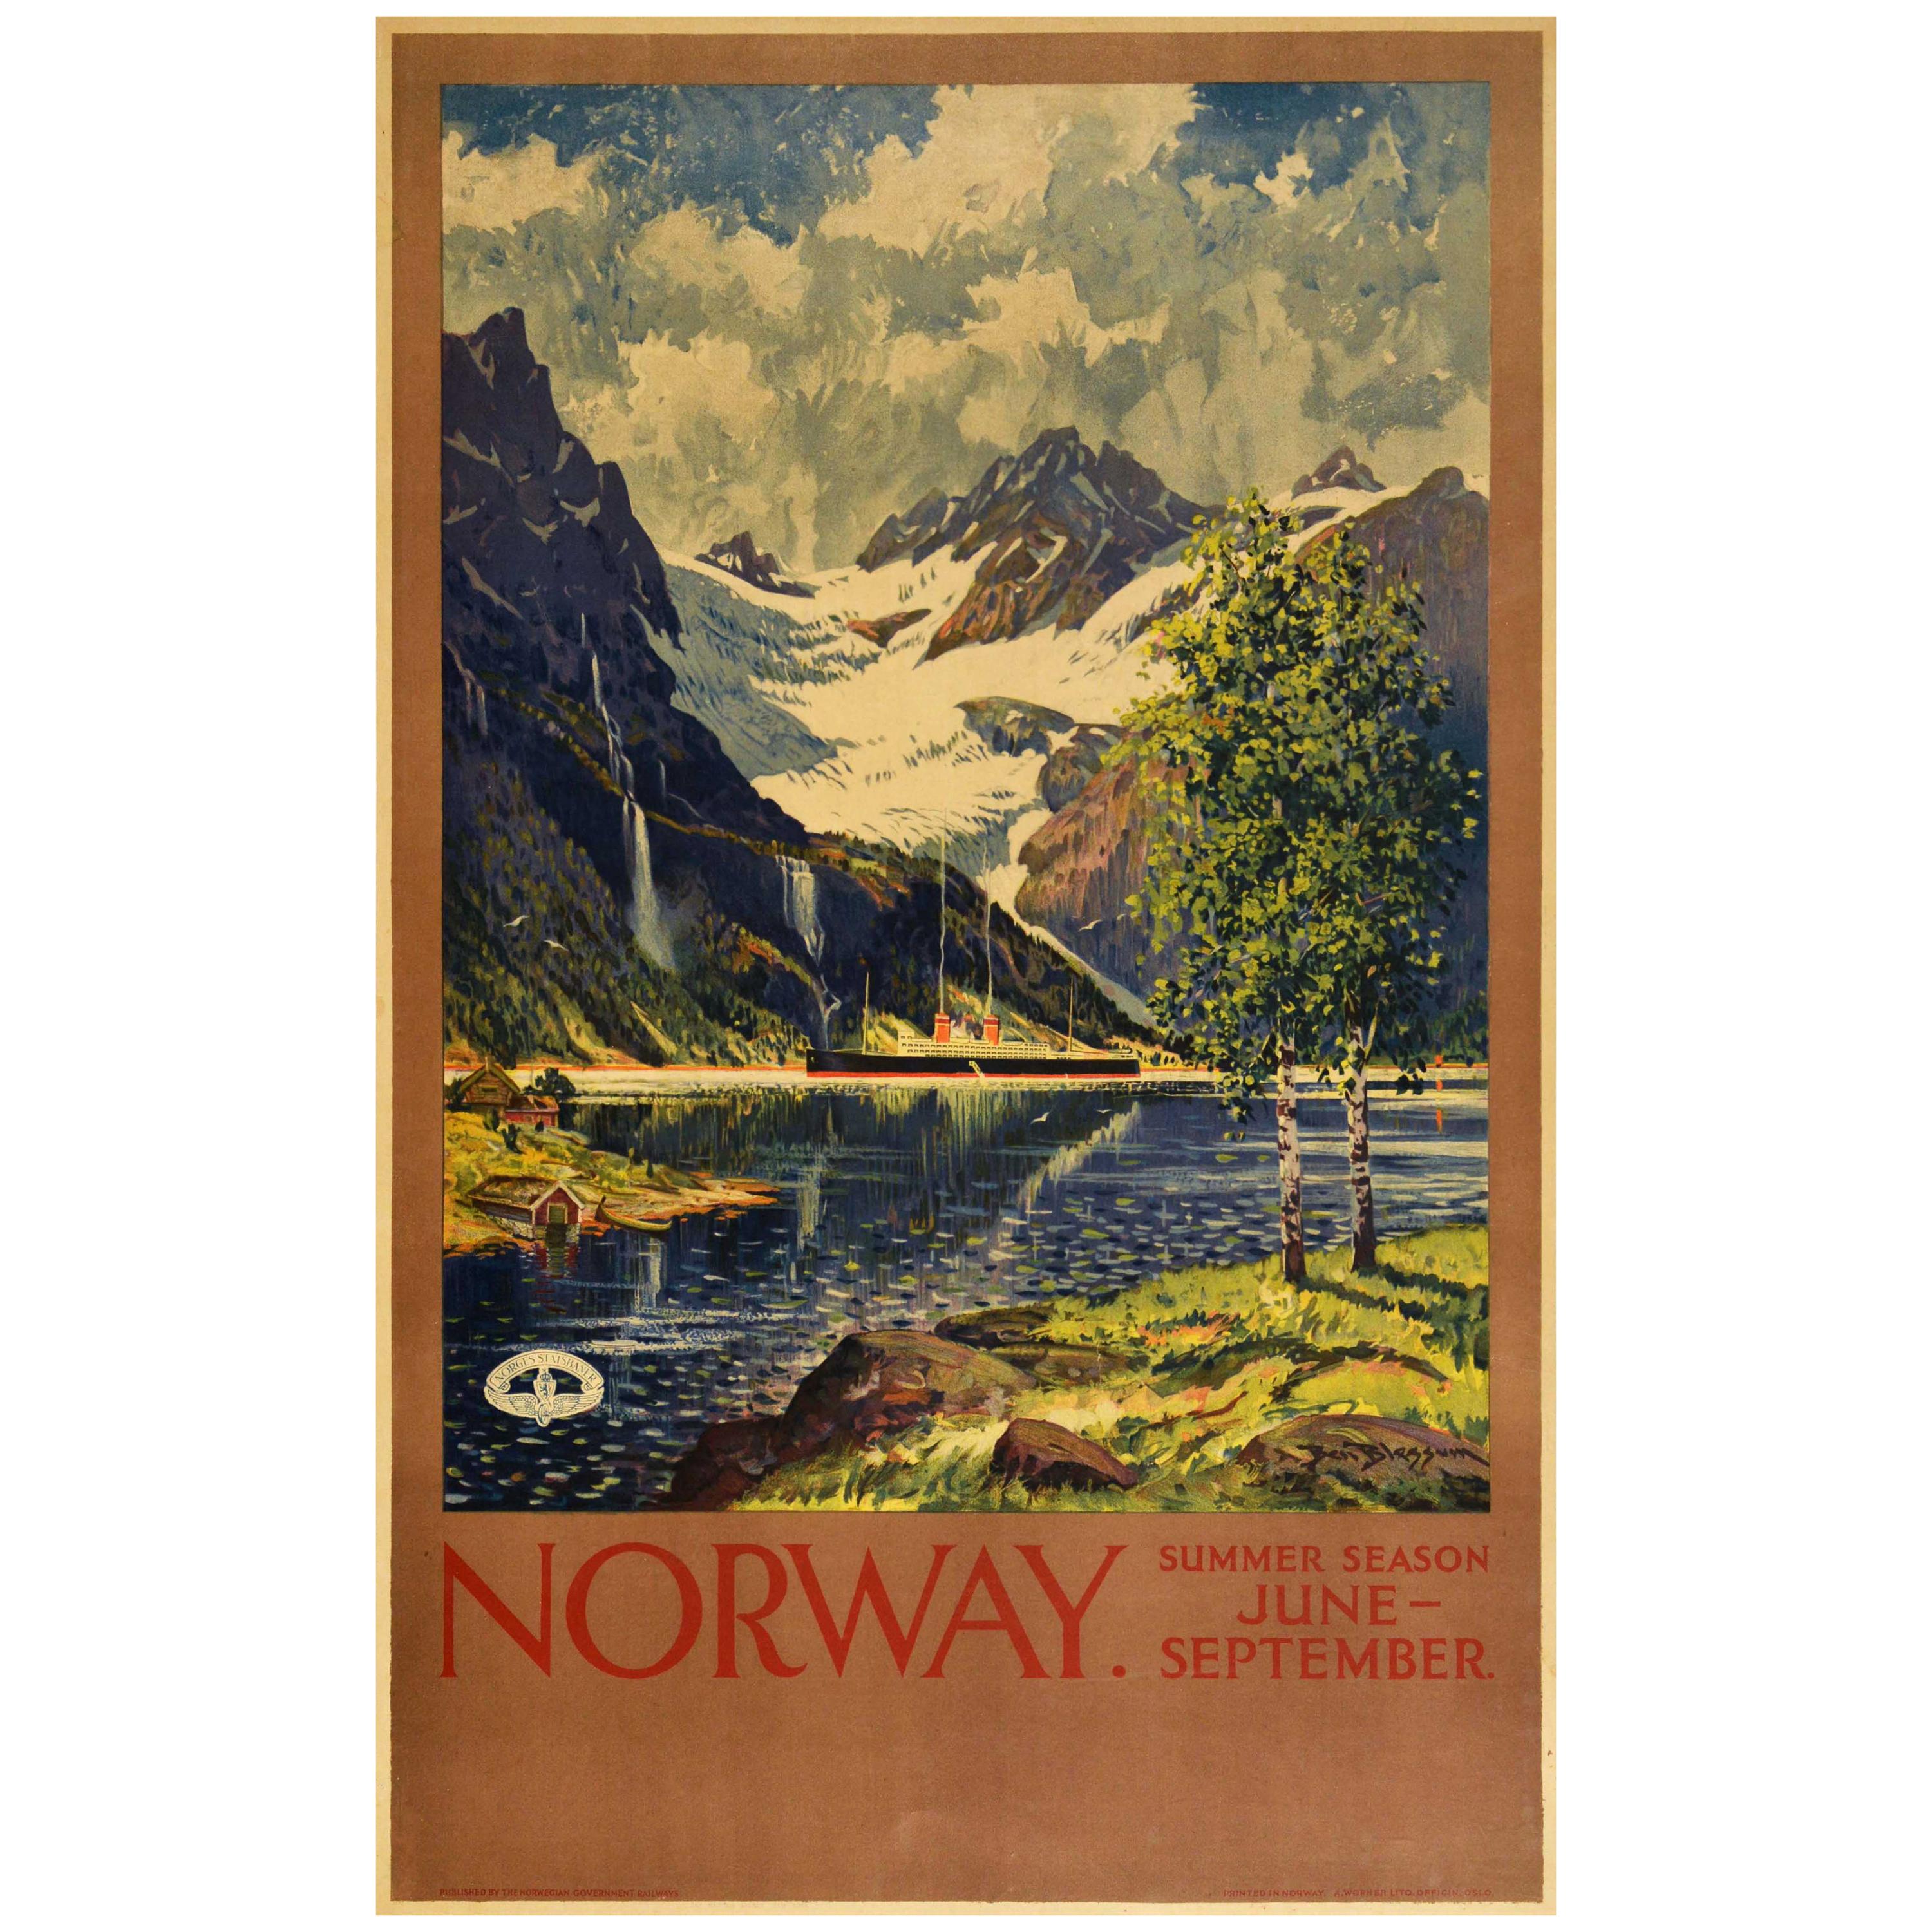 Original Vintage Norwegian Railway Poster Norway Summer Season Travel Fjord View